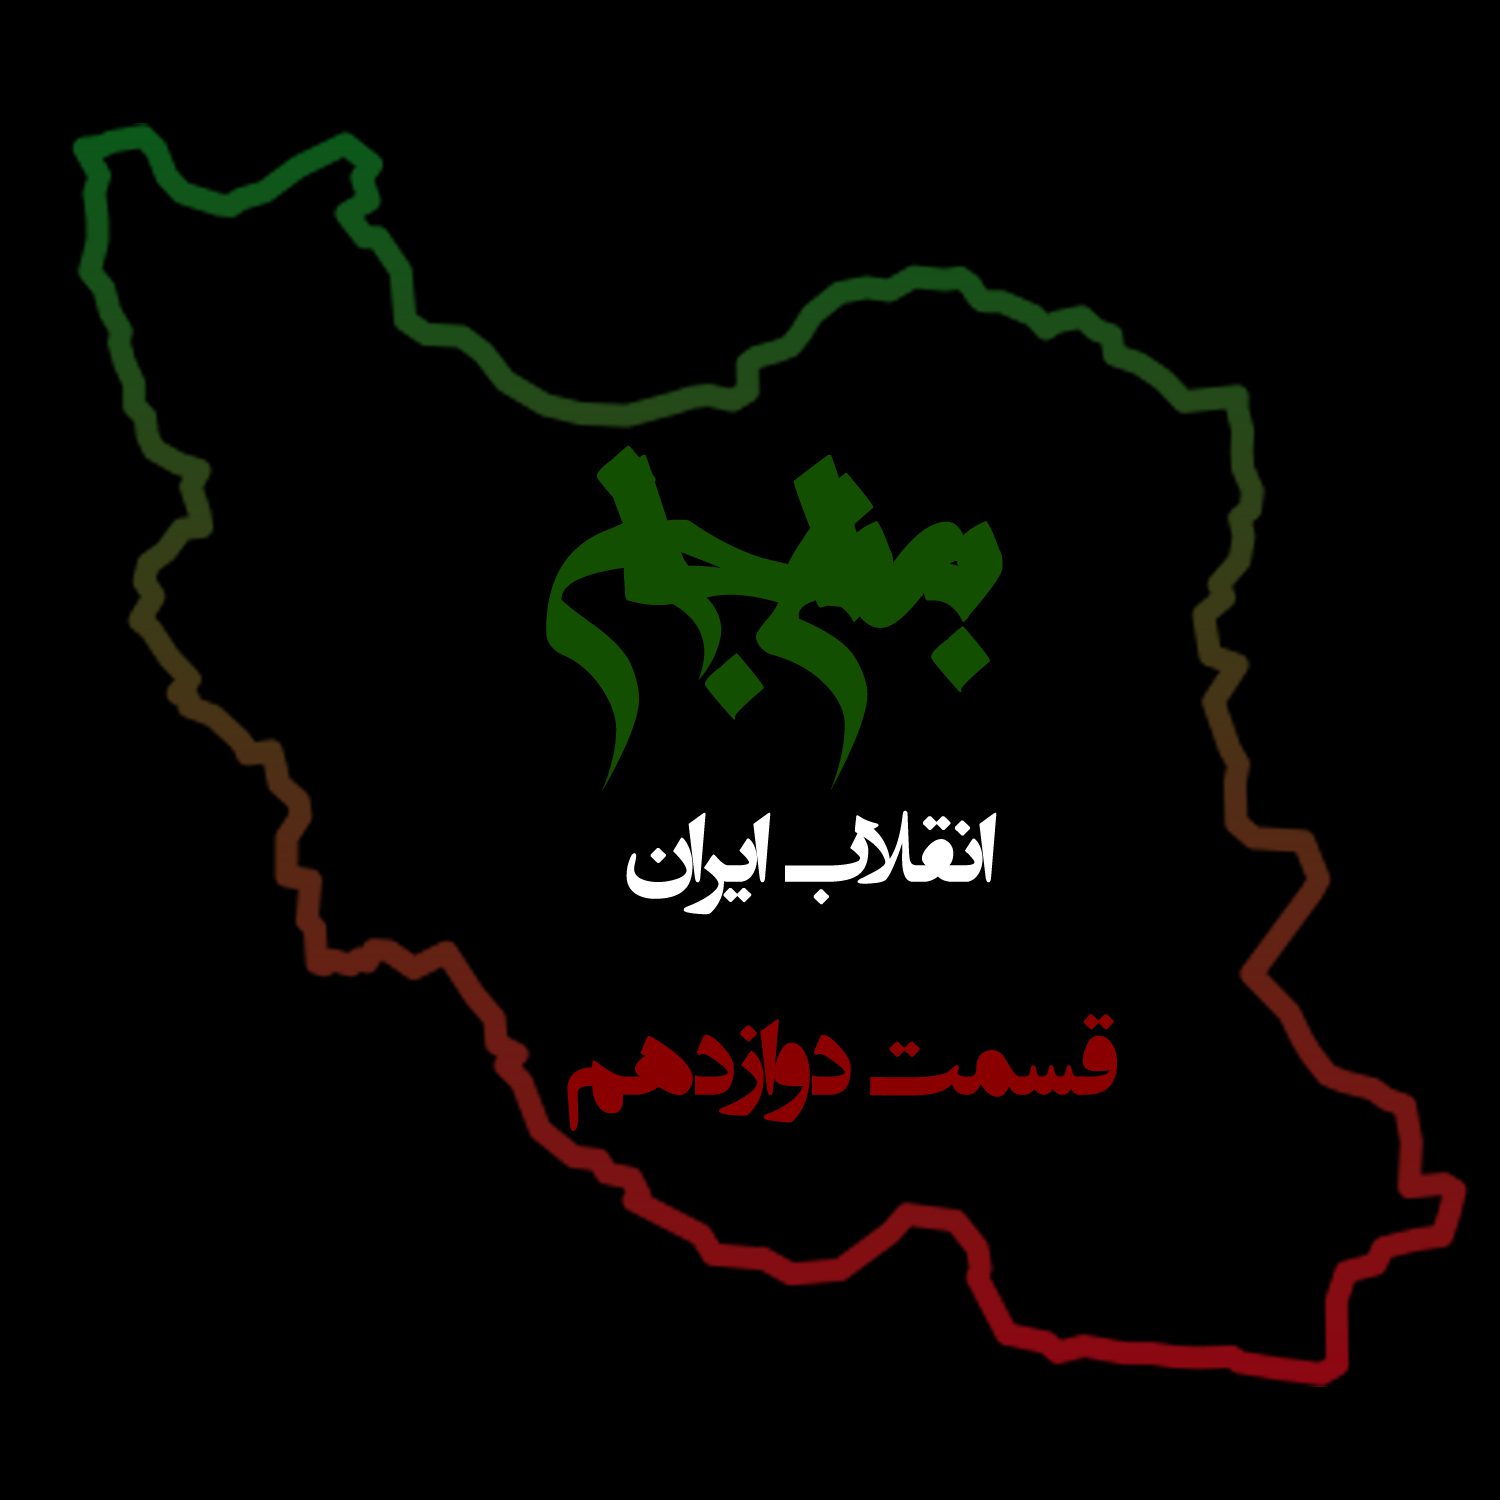 پادکست به نام جان - ویژه برنامه انقلاب ایران - قسمت دوازدهم عمل و عکس‌العمل - با نیما شهسواری